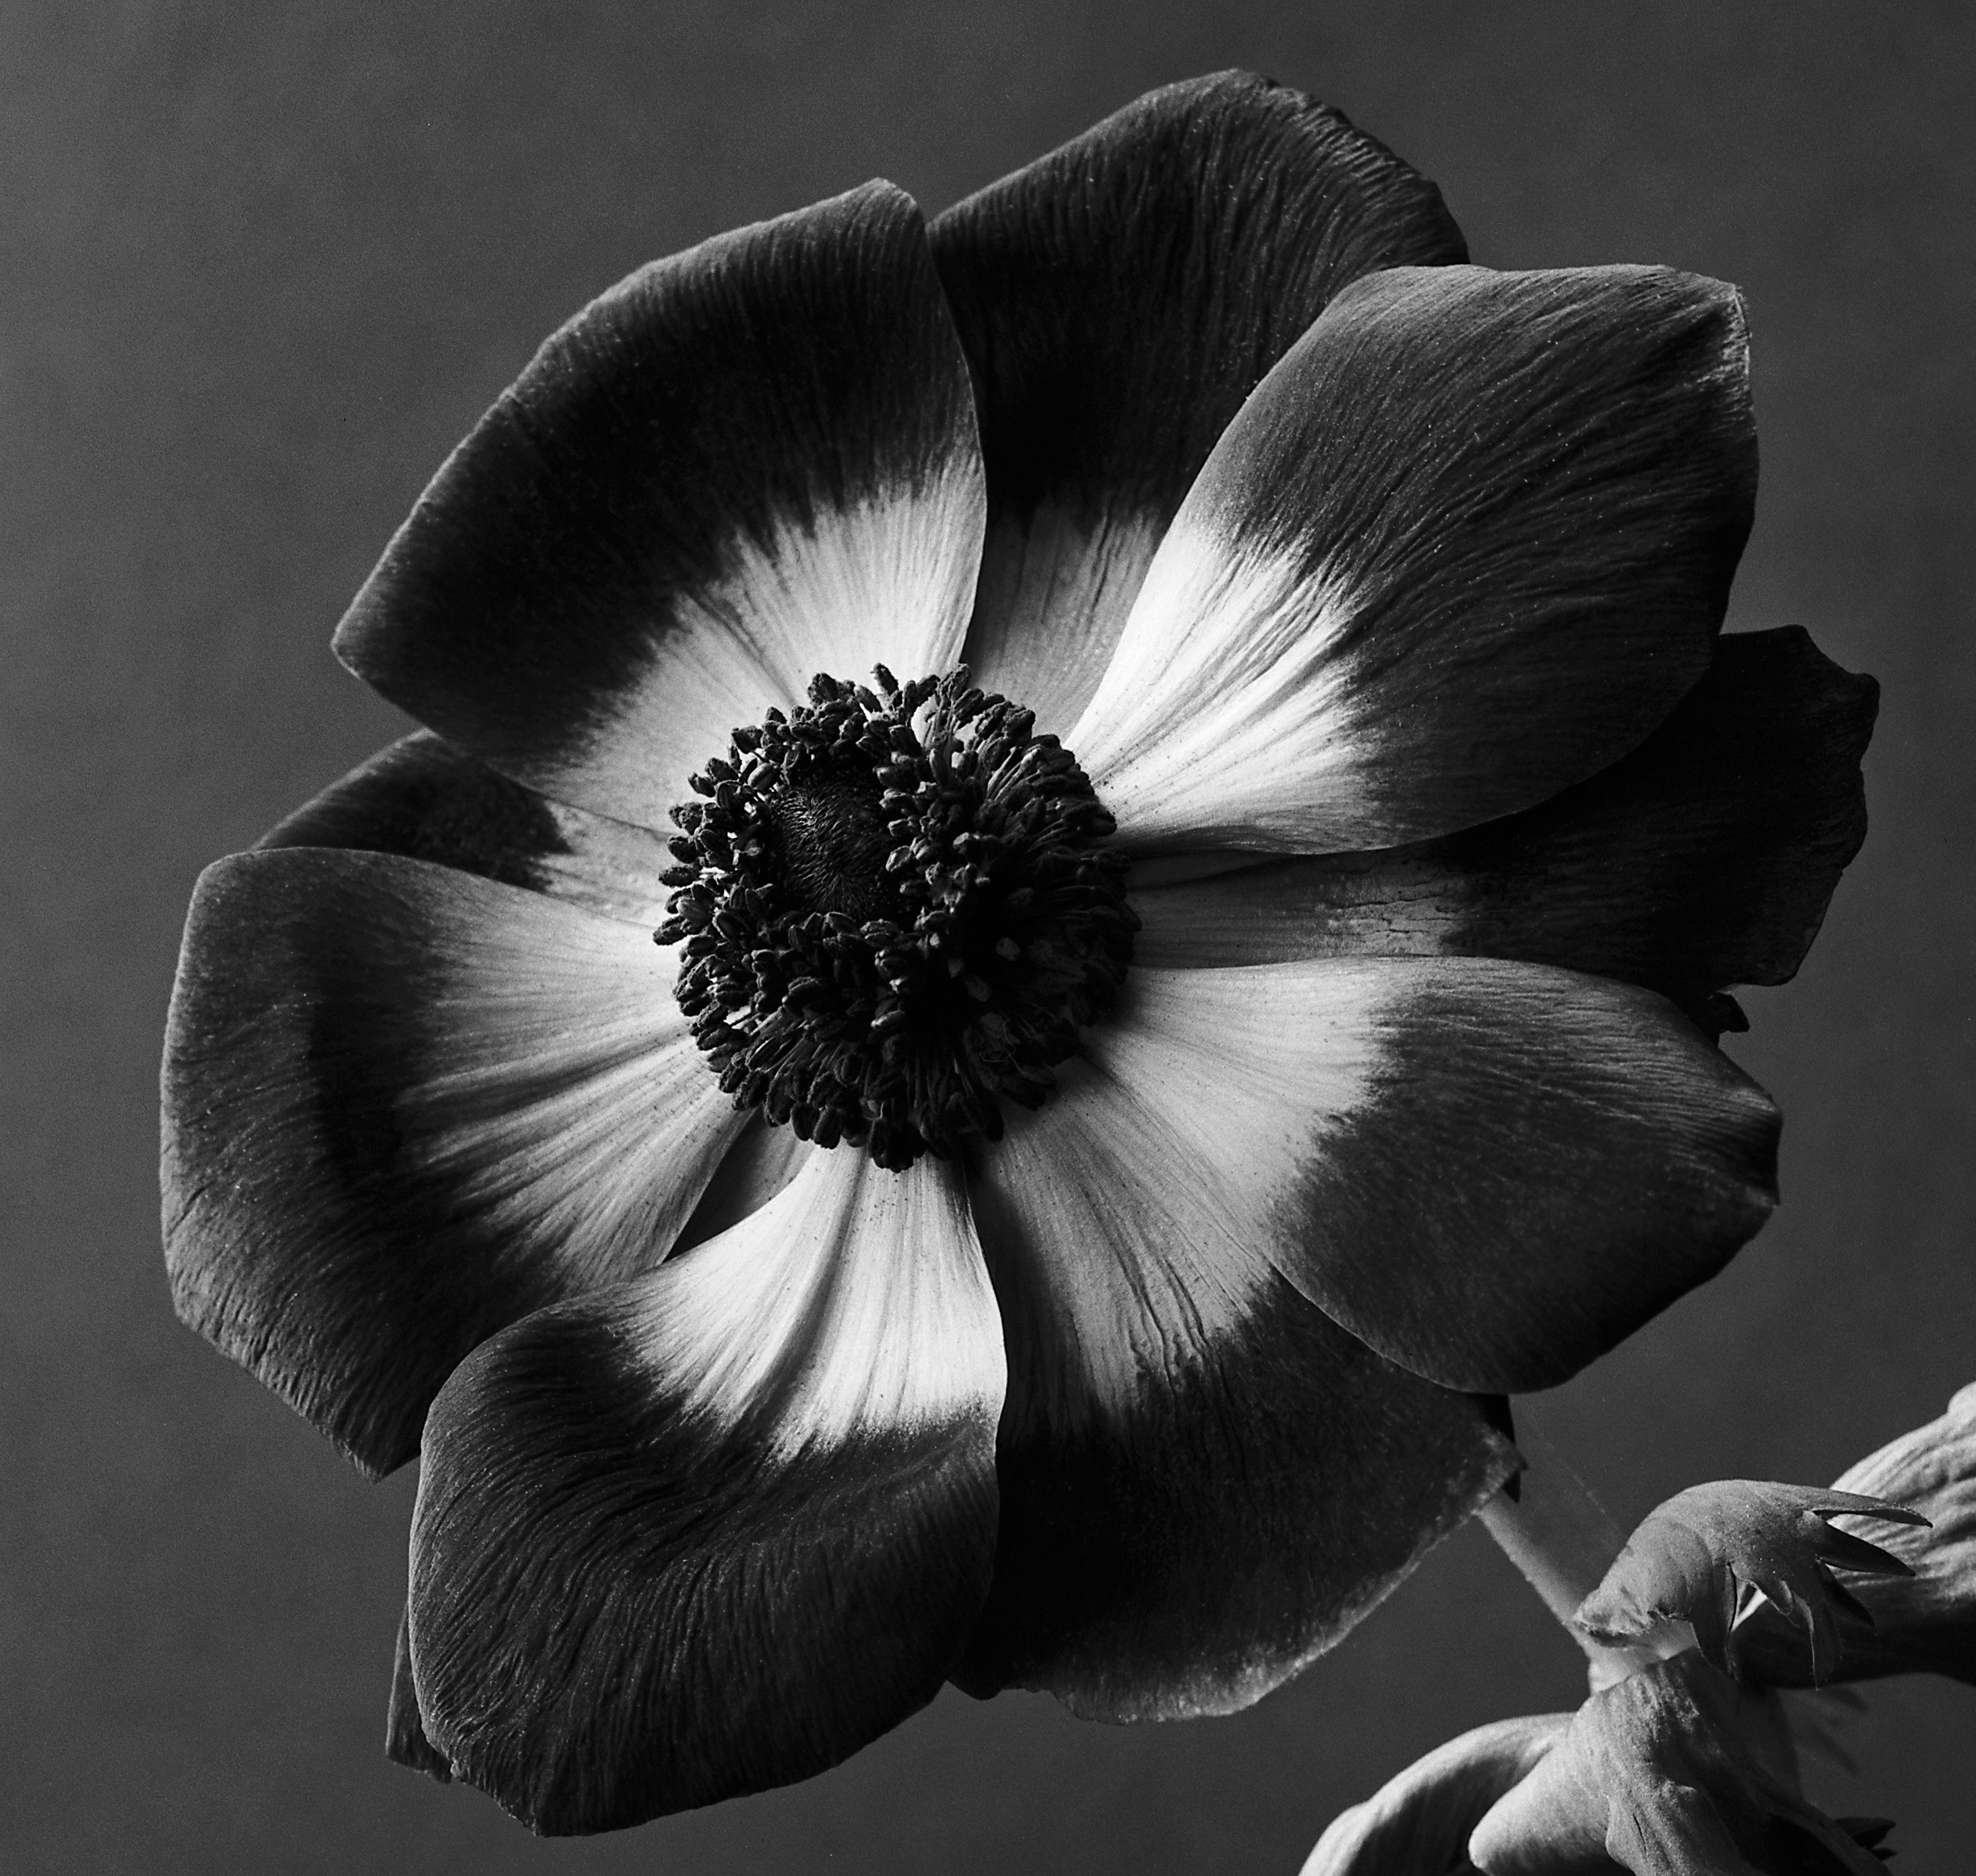  Anemone – Analogue Schwarz-Weiß-Blumenfotografie, Auflage von 20 Stück (Zeitgenössisch), Photograph, von Ugne Pouwell